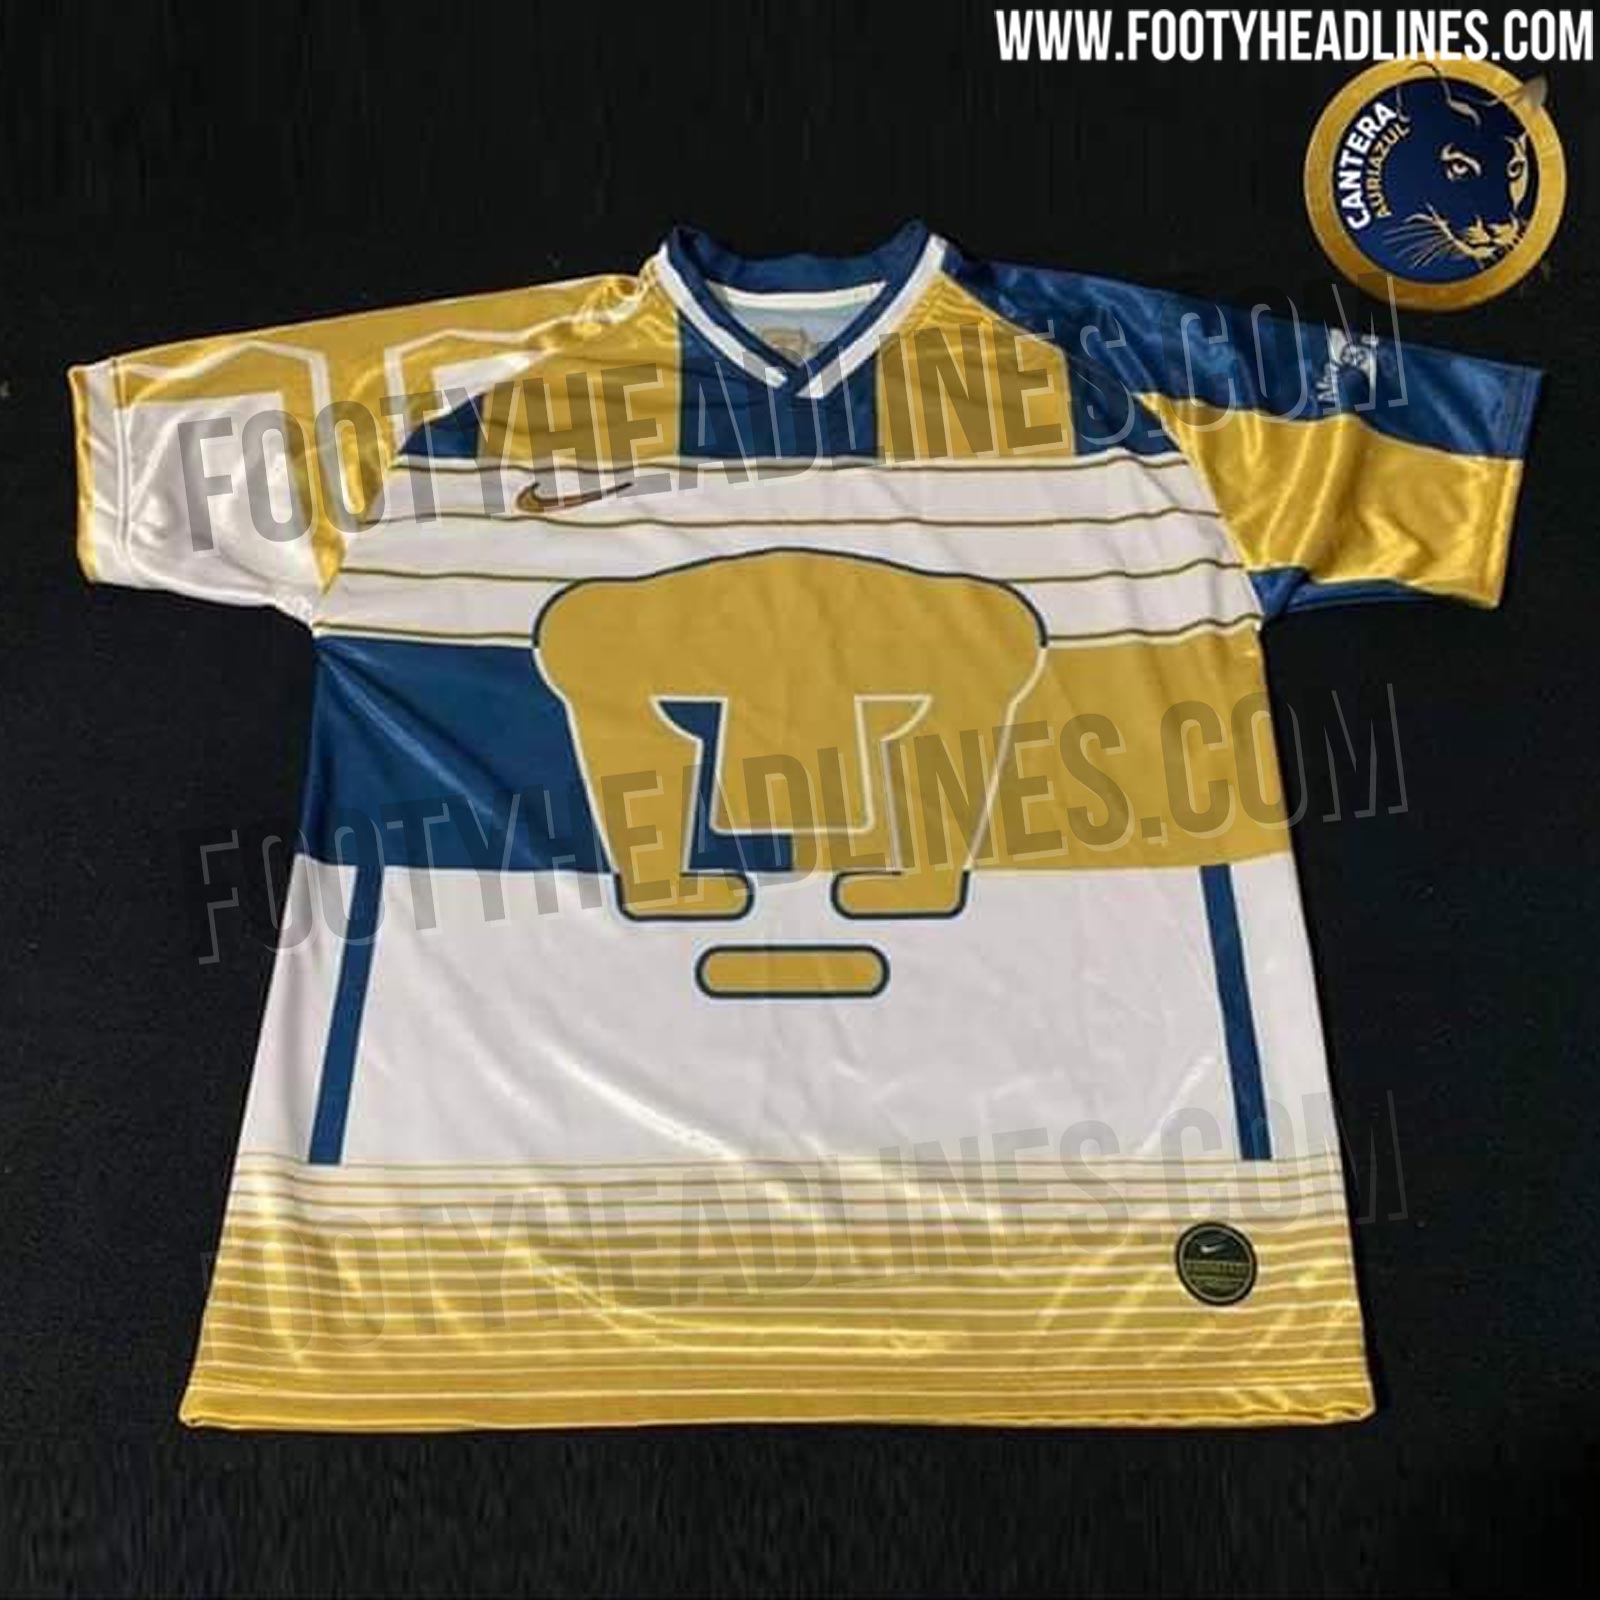 Este sería el uniforme de Pumas mezclando playeras de 1995 al 2002